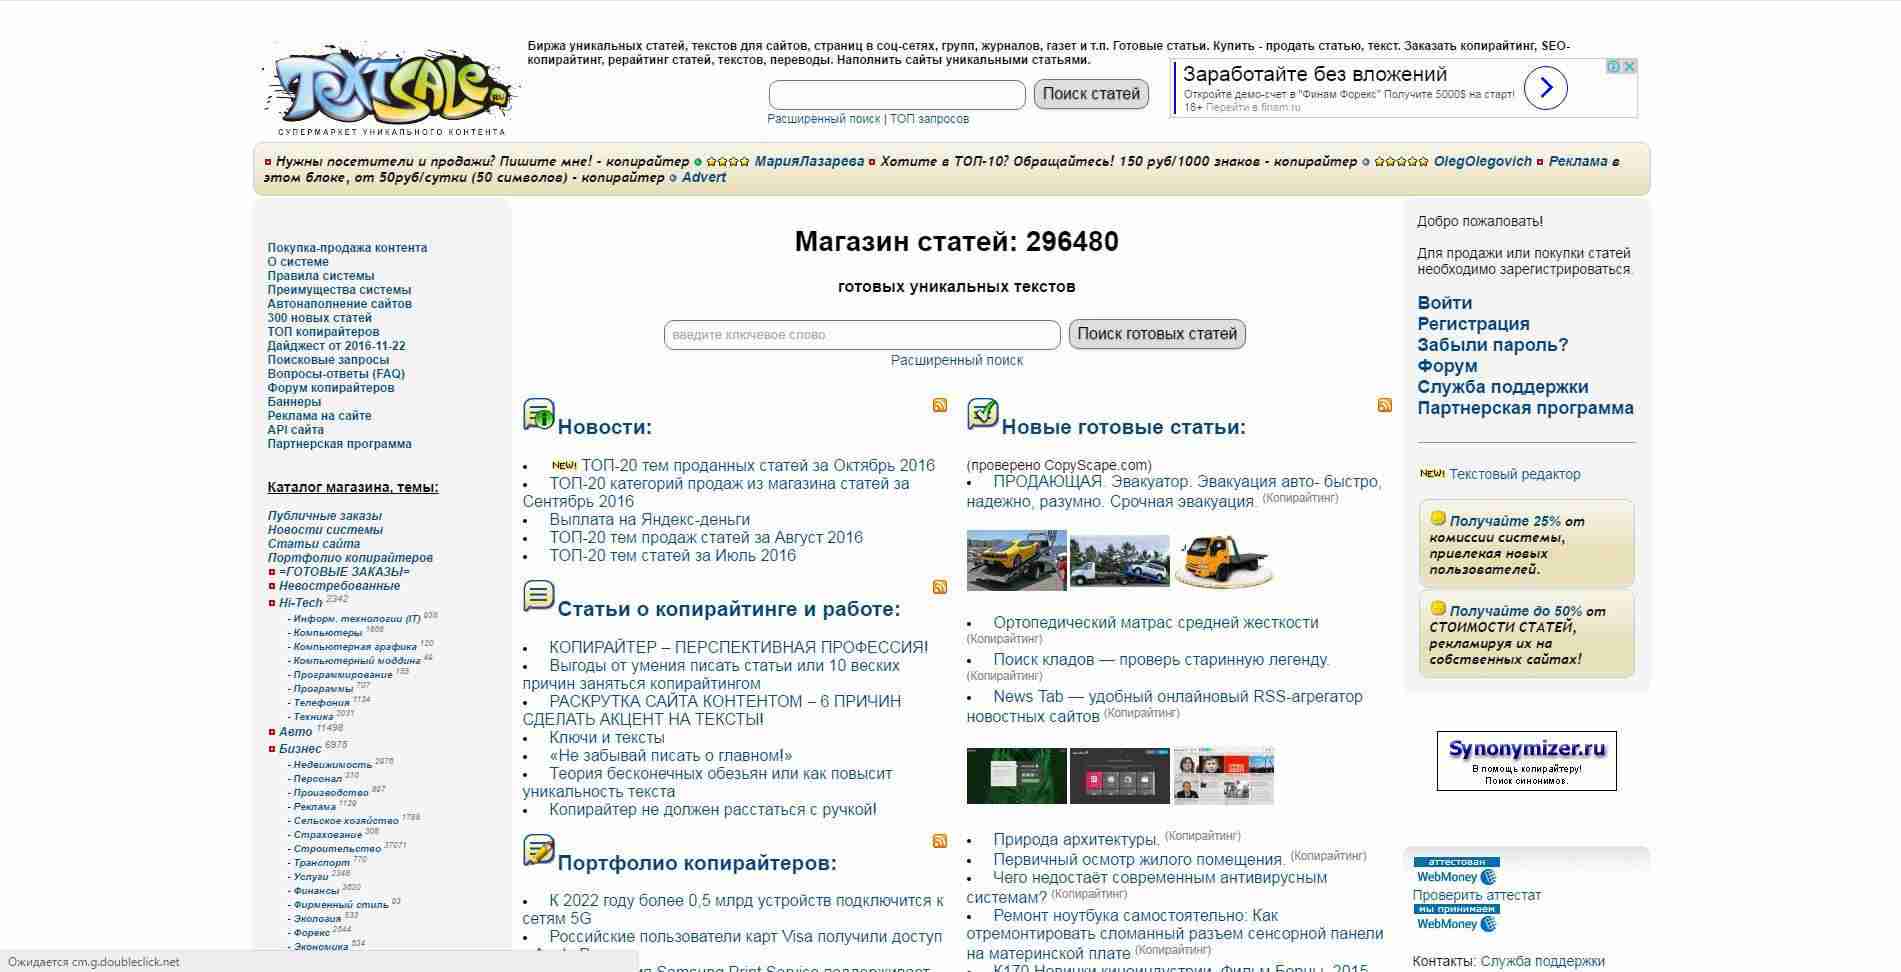 Как заработать на собственном сайте в интернете - 12 проверенных способов | biznessystem.ru